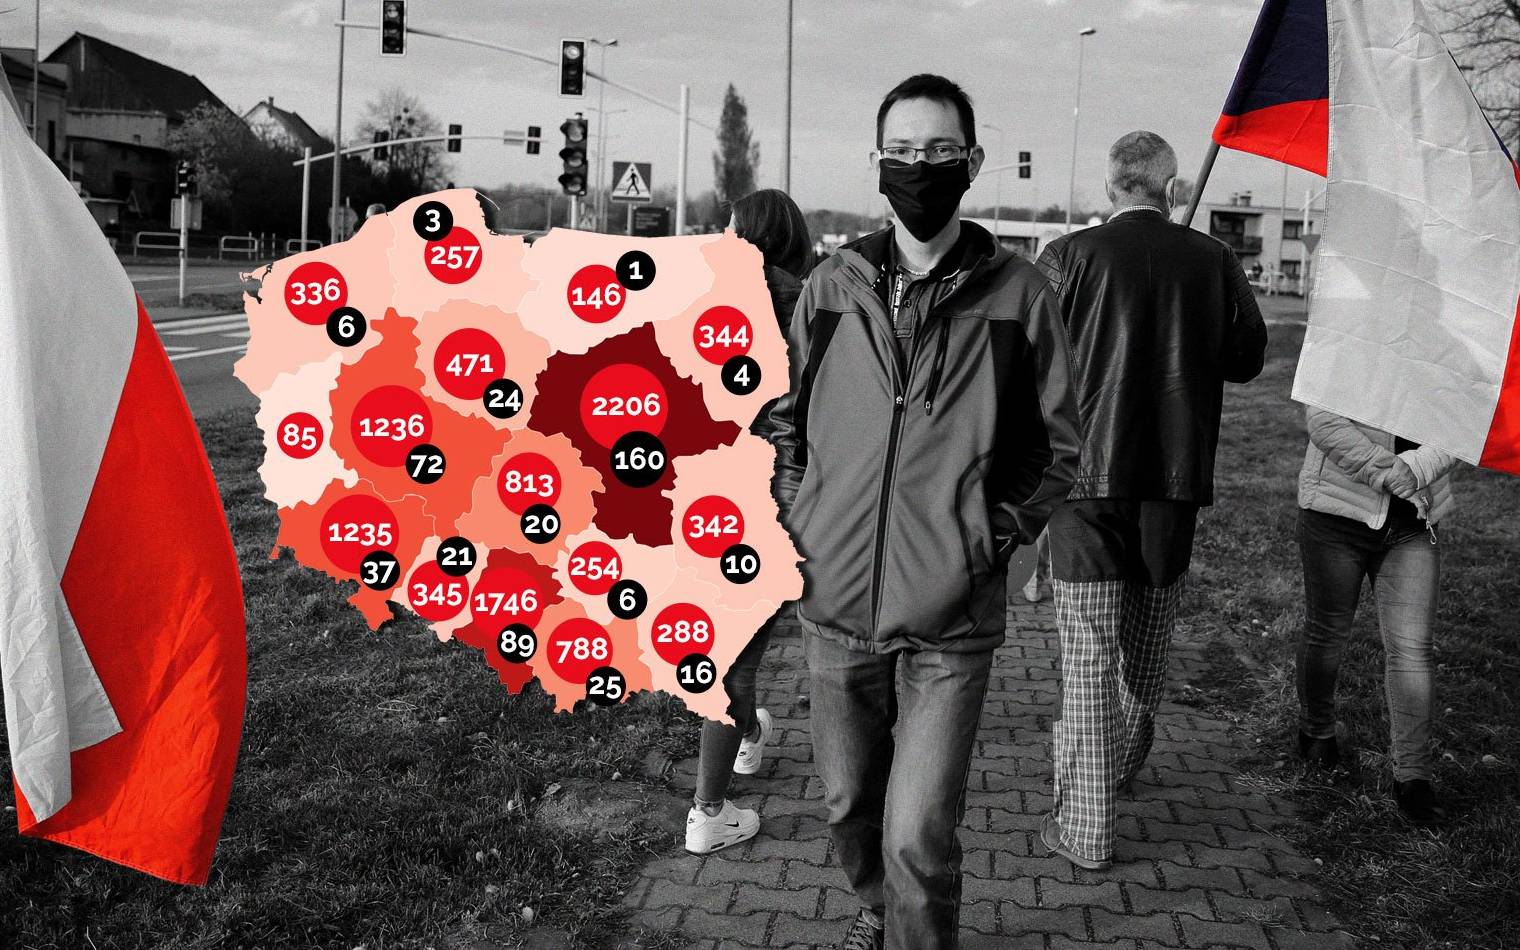 Grafika do artykułu W Polsce najtragiczniejszy dzień - 40 zmarłych, w Szwecji rekord zakażeń. Trump chce truć [RAPORT, MAPY, WYKRESY]